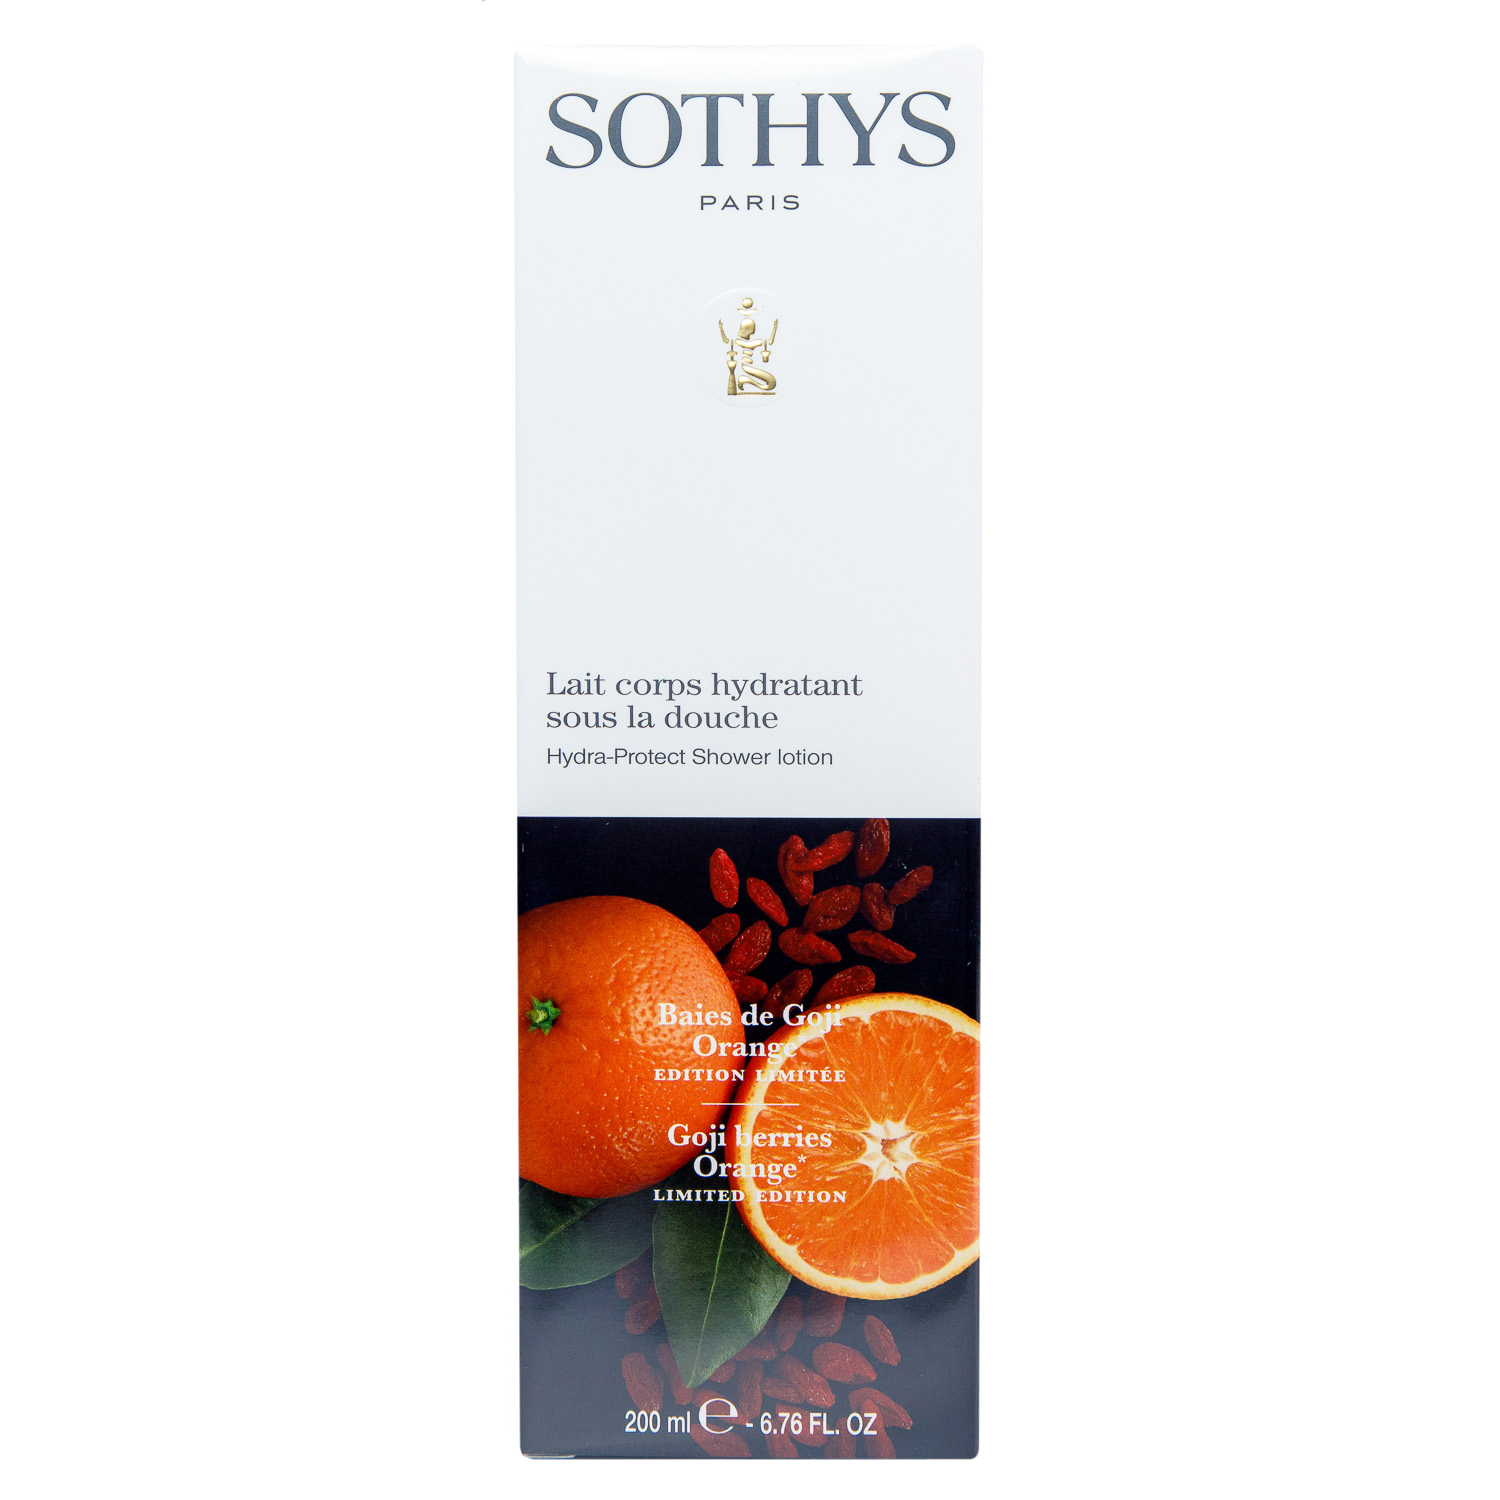 Sothys Увлажняющий лосьон-уход для использования в душе Ягоды годжи - апельсин, 200 мл (Sothys, Seasonal Treatment) гель для душа modamo с экстрактом ягод годжи 500 мл